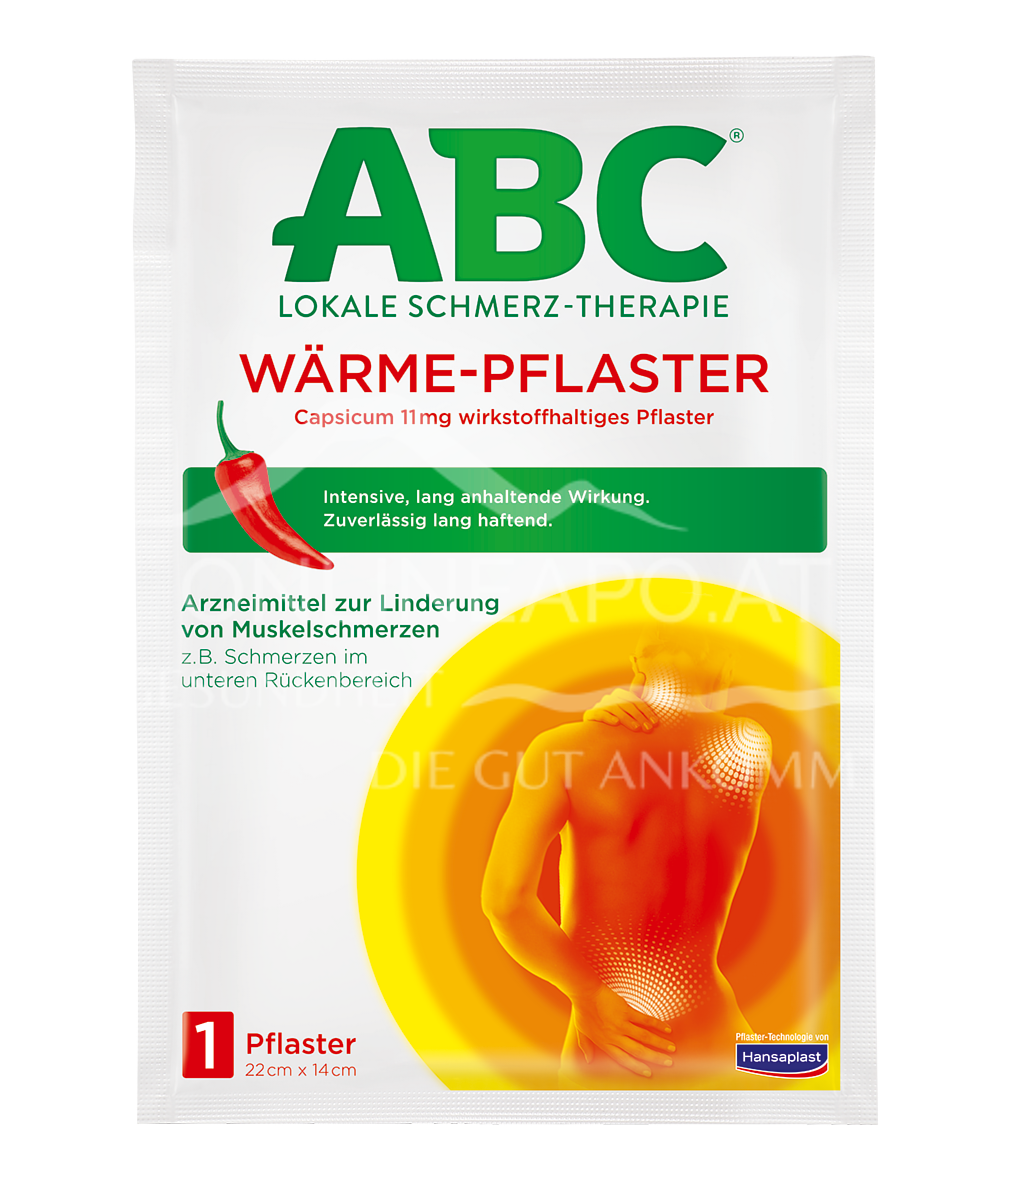  ABC Wärme-Pflaster Capsicum